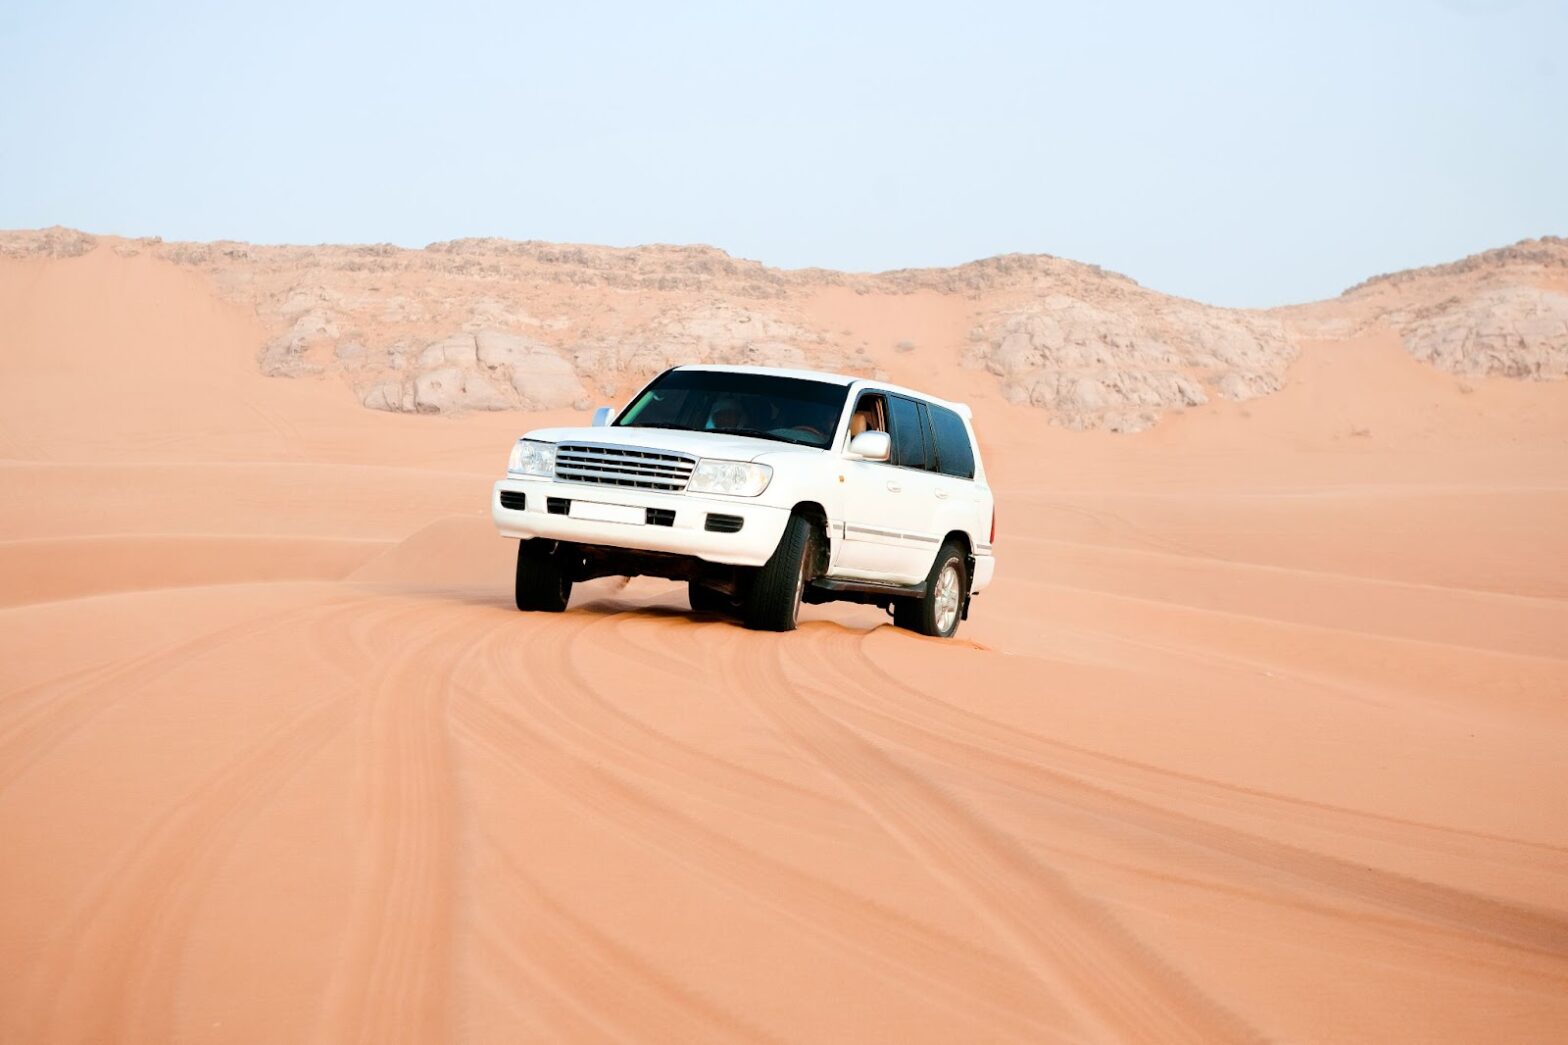 White car in desert